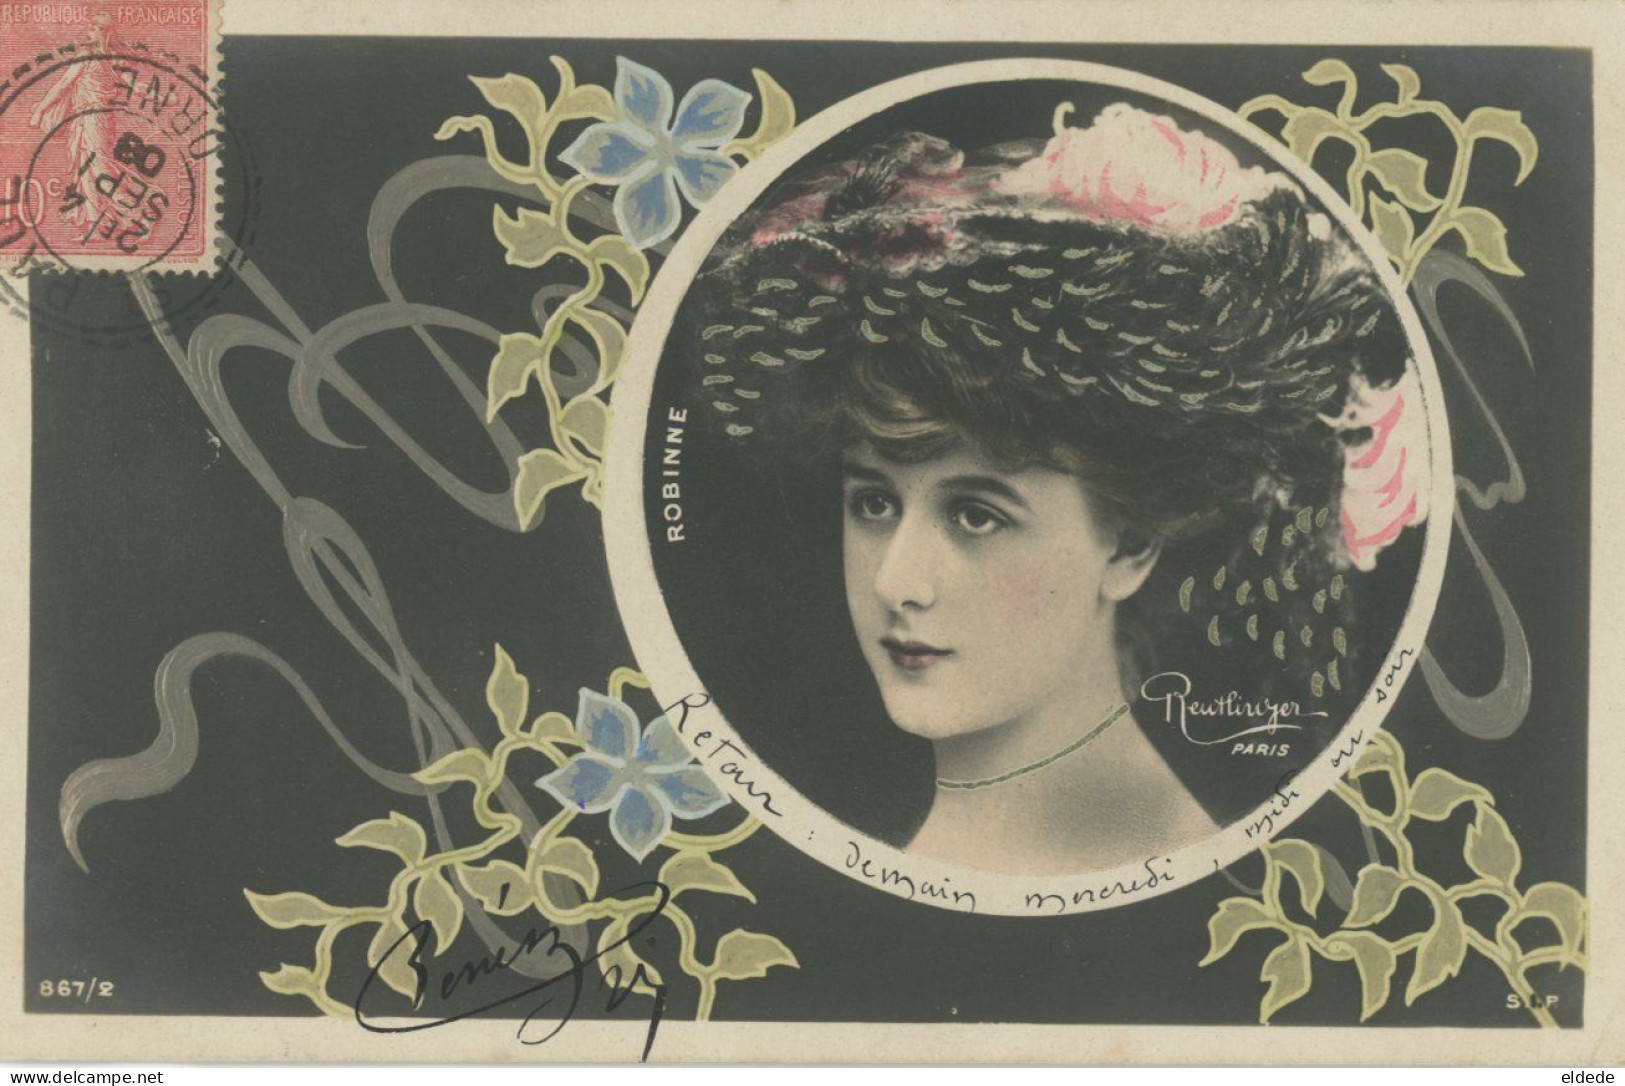 Decor Art Nouveau Actrice Robinne Née à Montluçon Envoi Horloger Bellou En Houlme Orne - Avant 1900